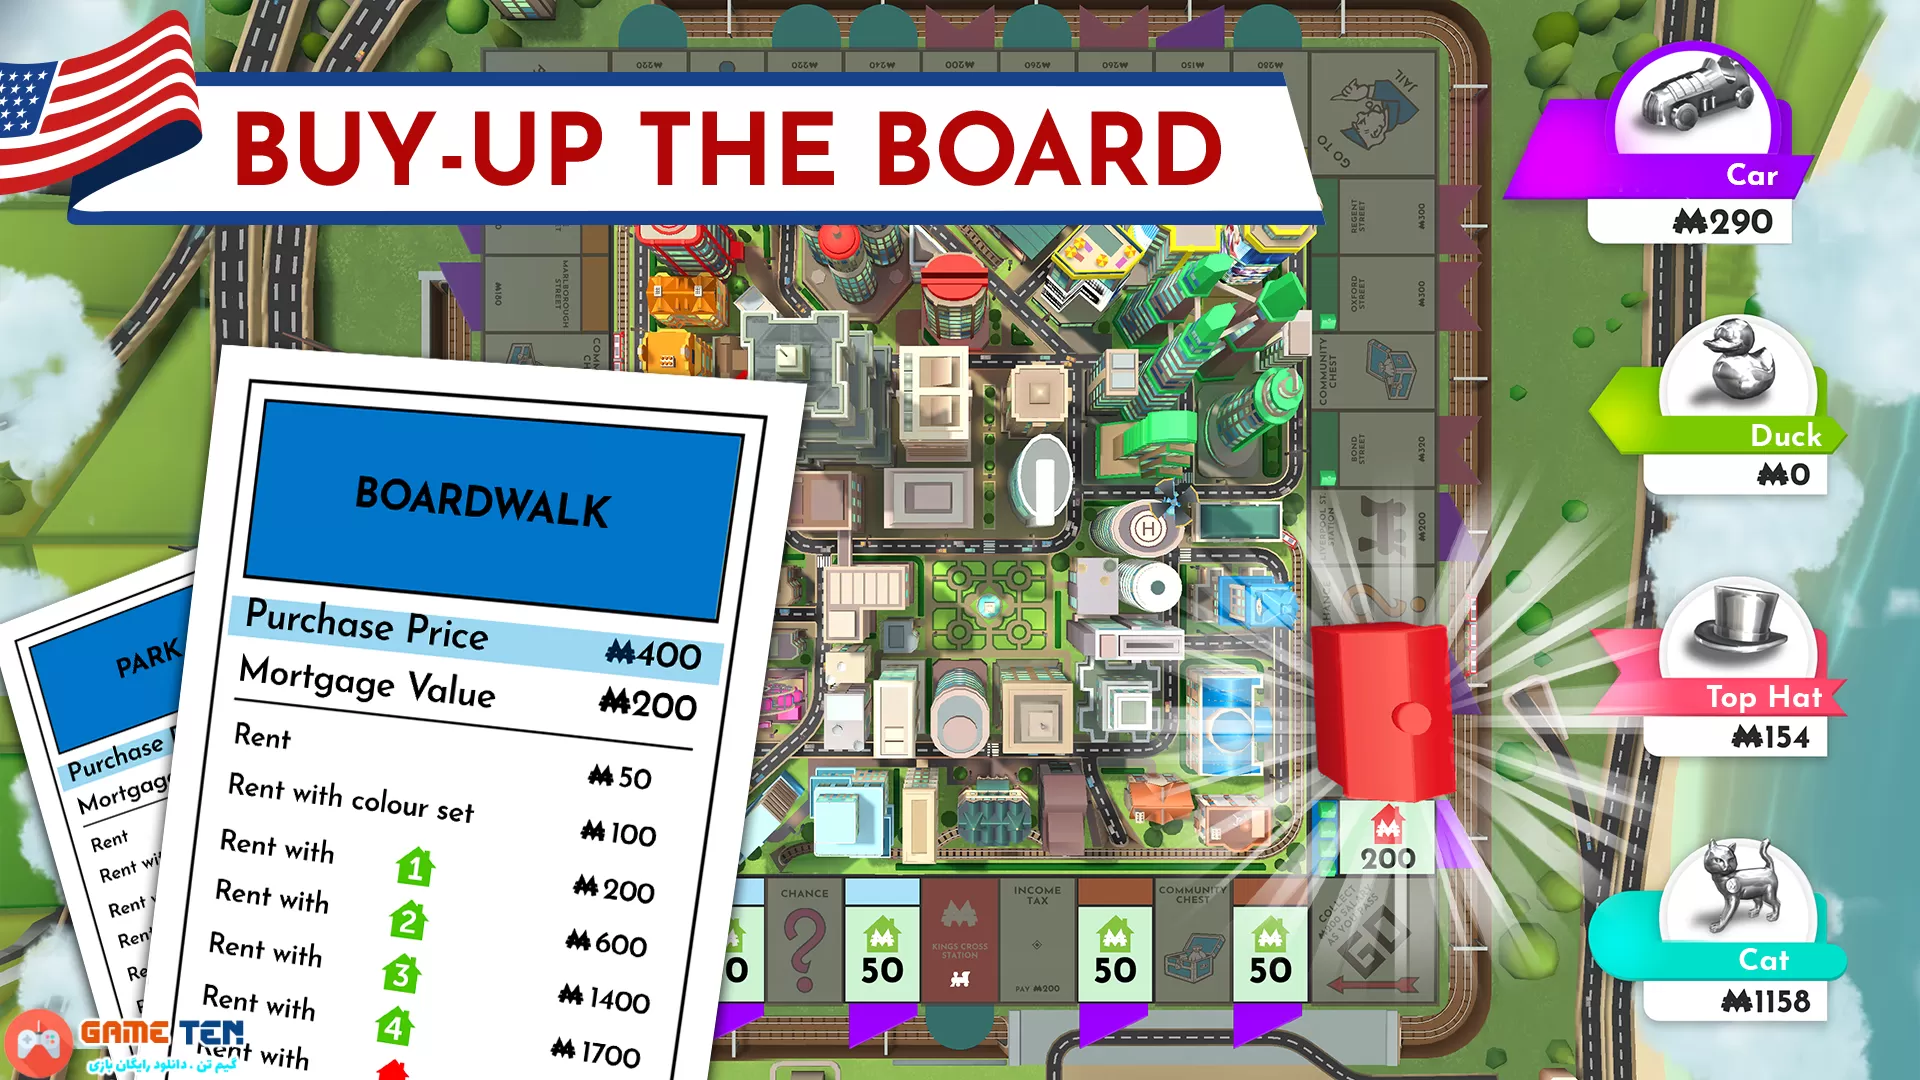 دانلود Monopoly MOD 1.11.1 - بازی تخته مونوپولی برای اندروید + مود